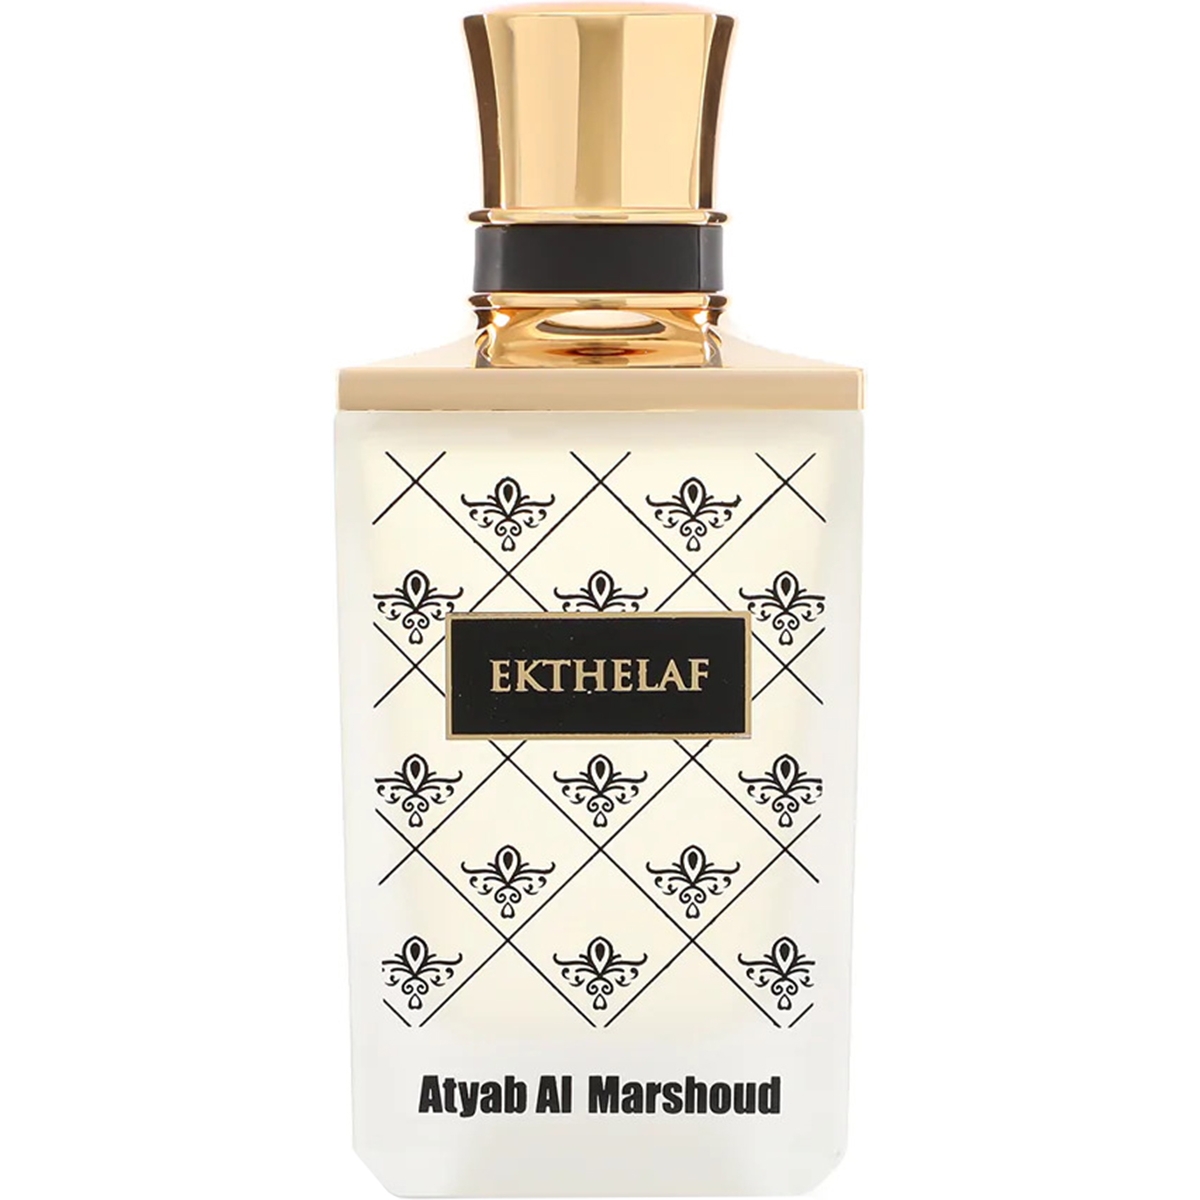 Ekhtelaf Atyab al Marshoud Perfumes, Profumi Unisex, Arada Perfumes